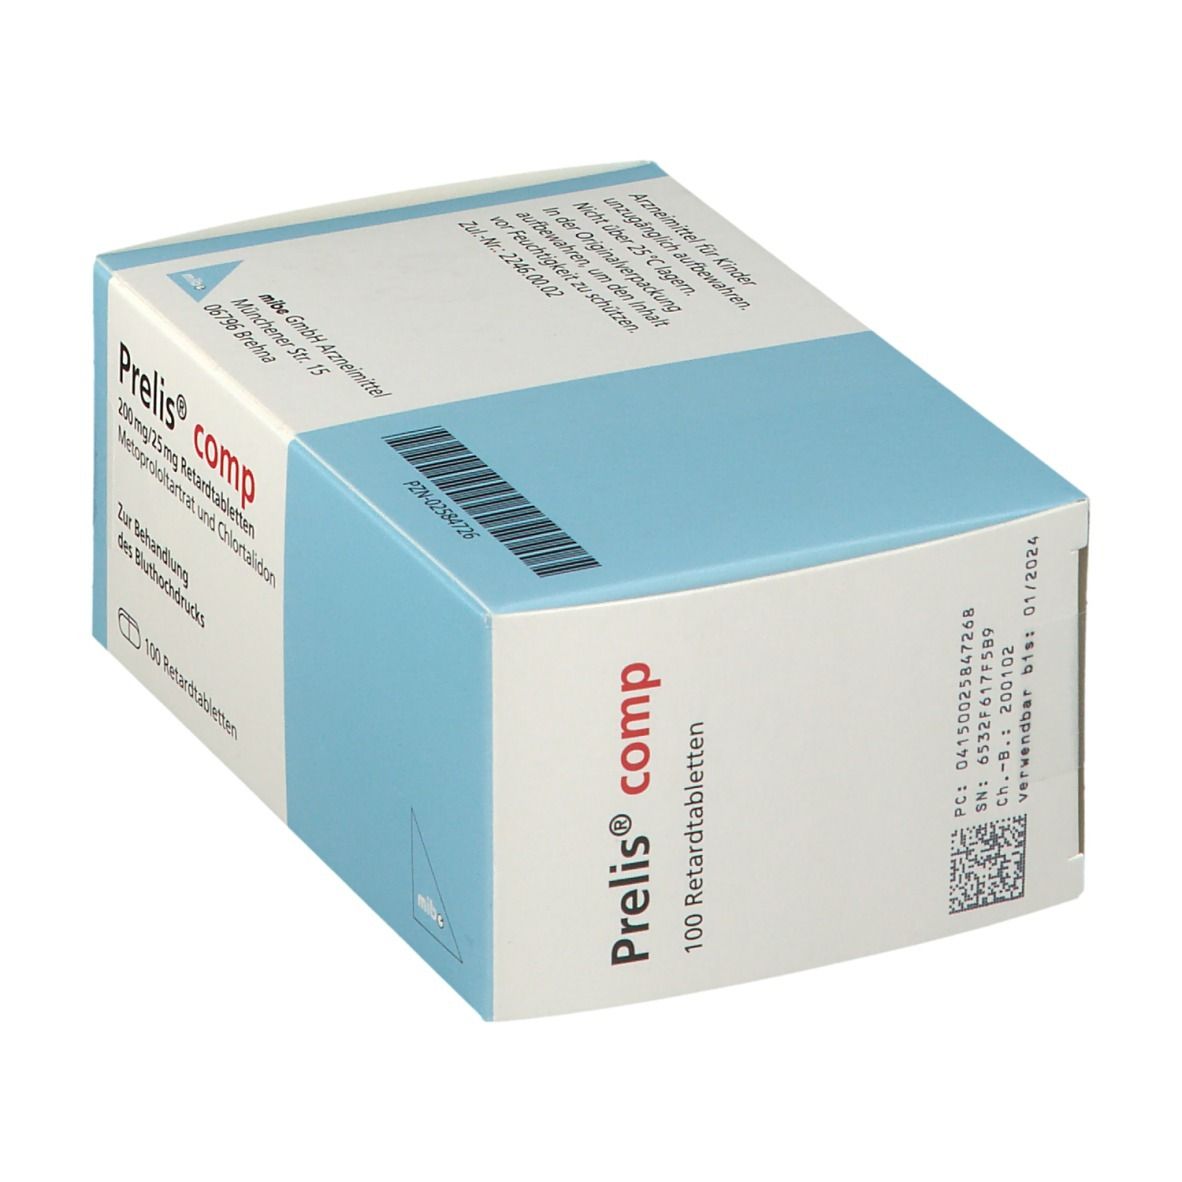 Prelis® comp 200 mg/25 mg